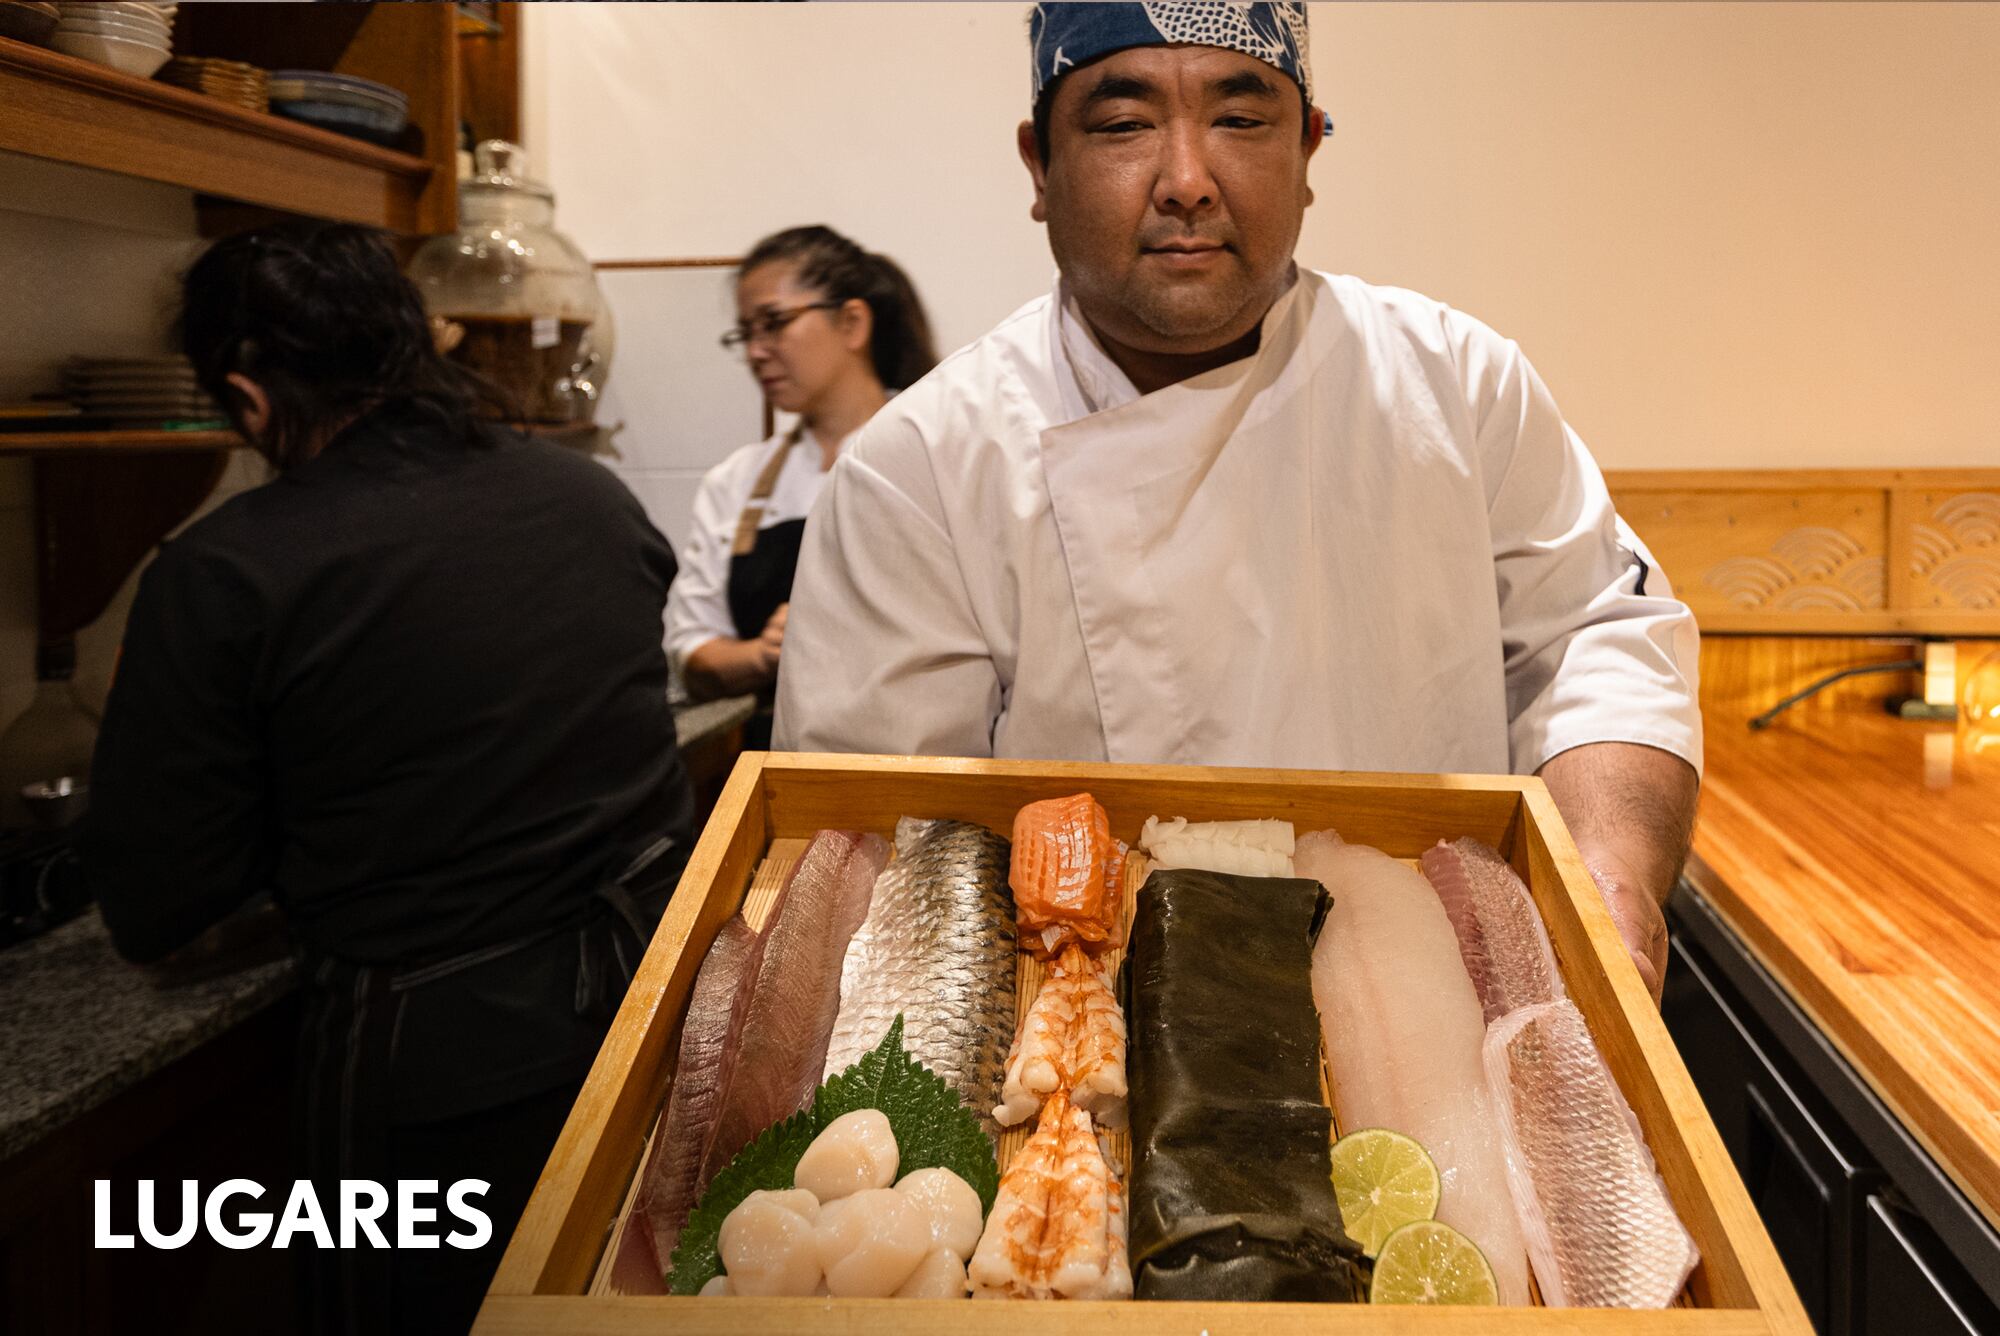 Omakase: 5 restaurantes para comer sushi en la barra y ponerse en manos del chef